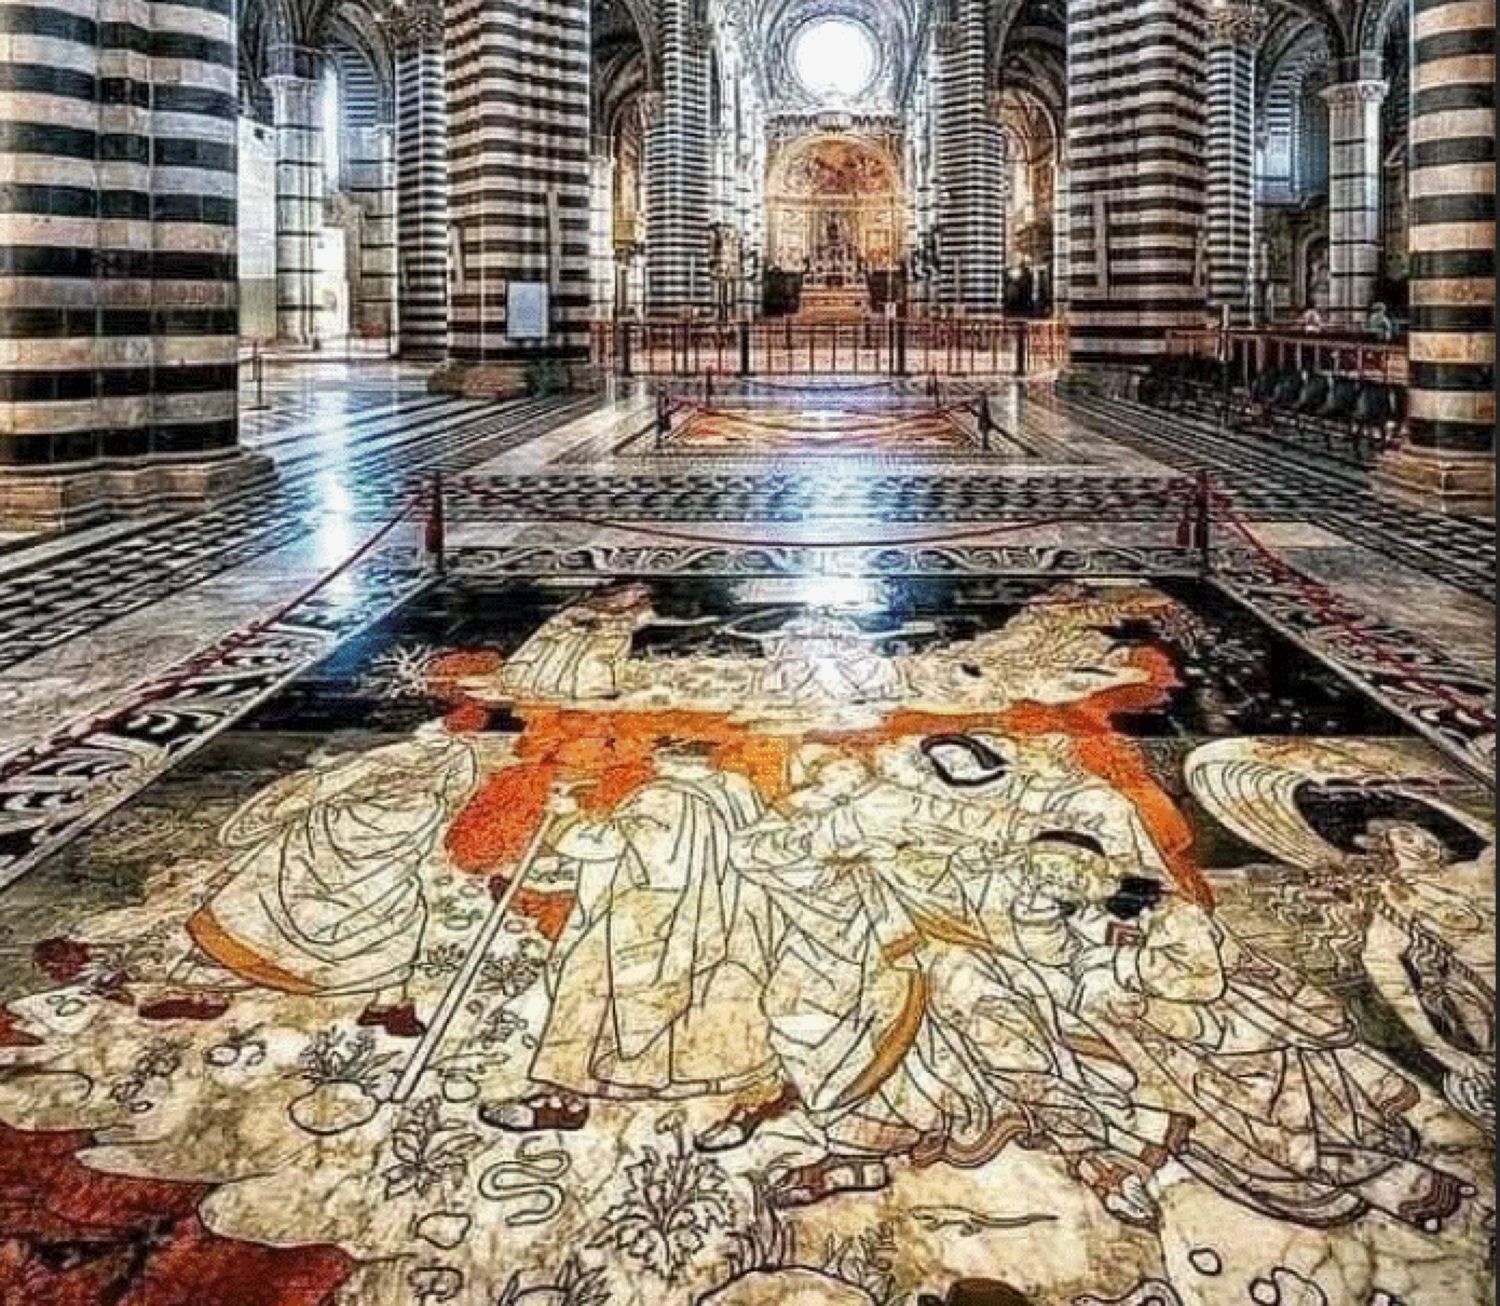 Povestea impresionantă a faimoasei podele din Catedrala Siena. Pentru realizarea acesteia au lucrat peste 40 de artiști